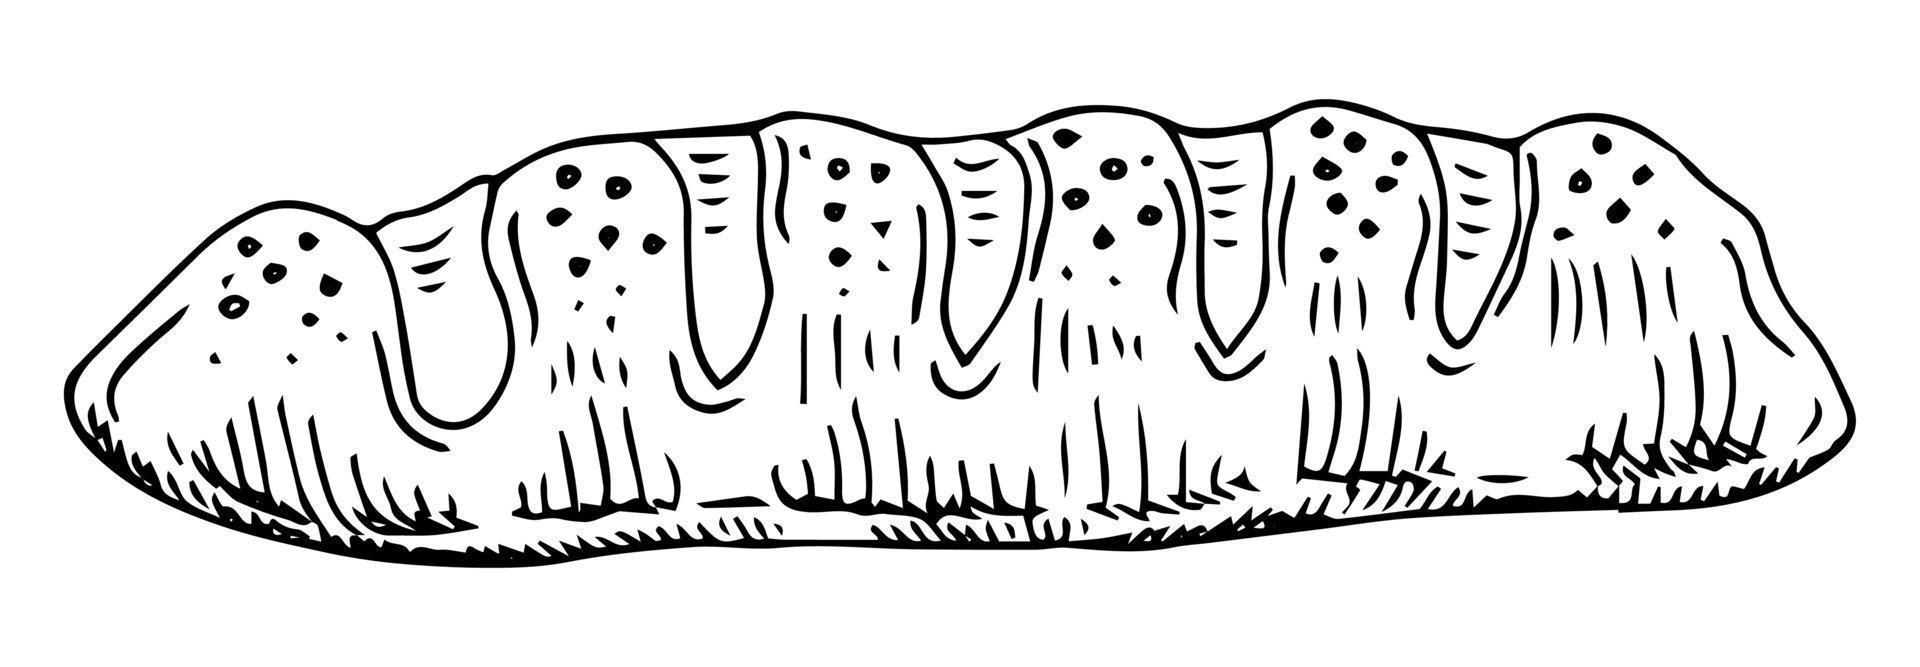 pão de baguete de desenho vetorial desenhado à mão isolado no fundo branco vetor